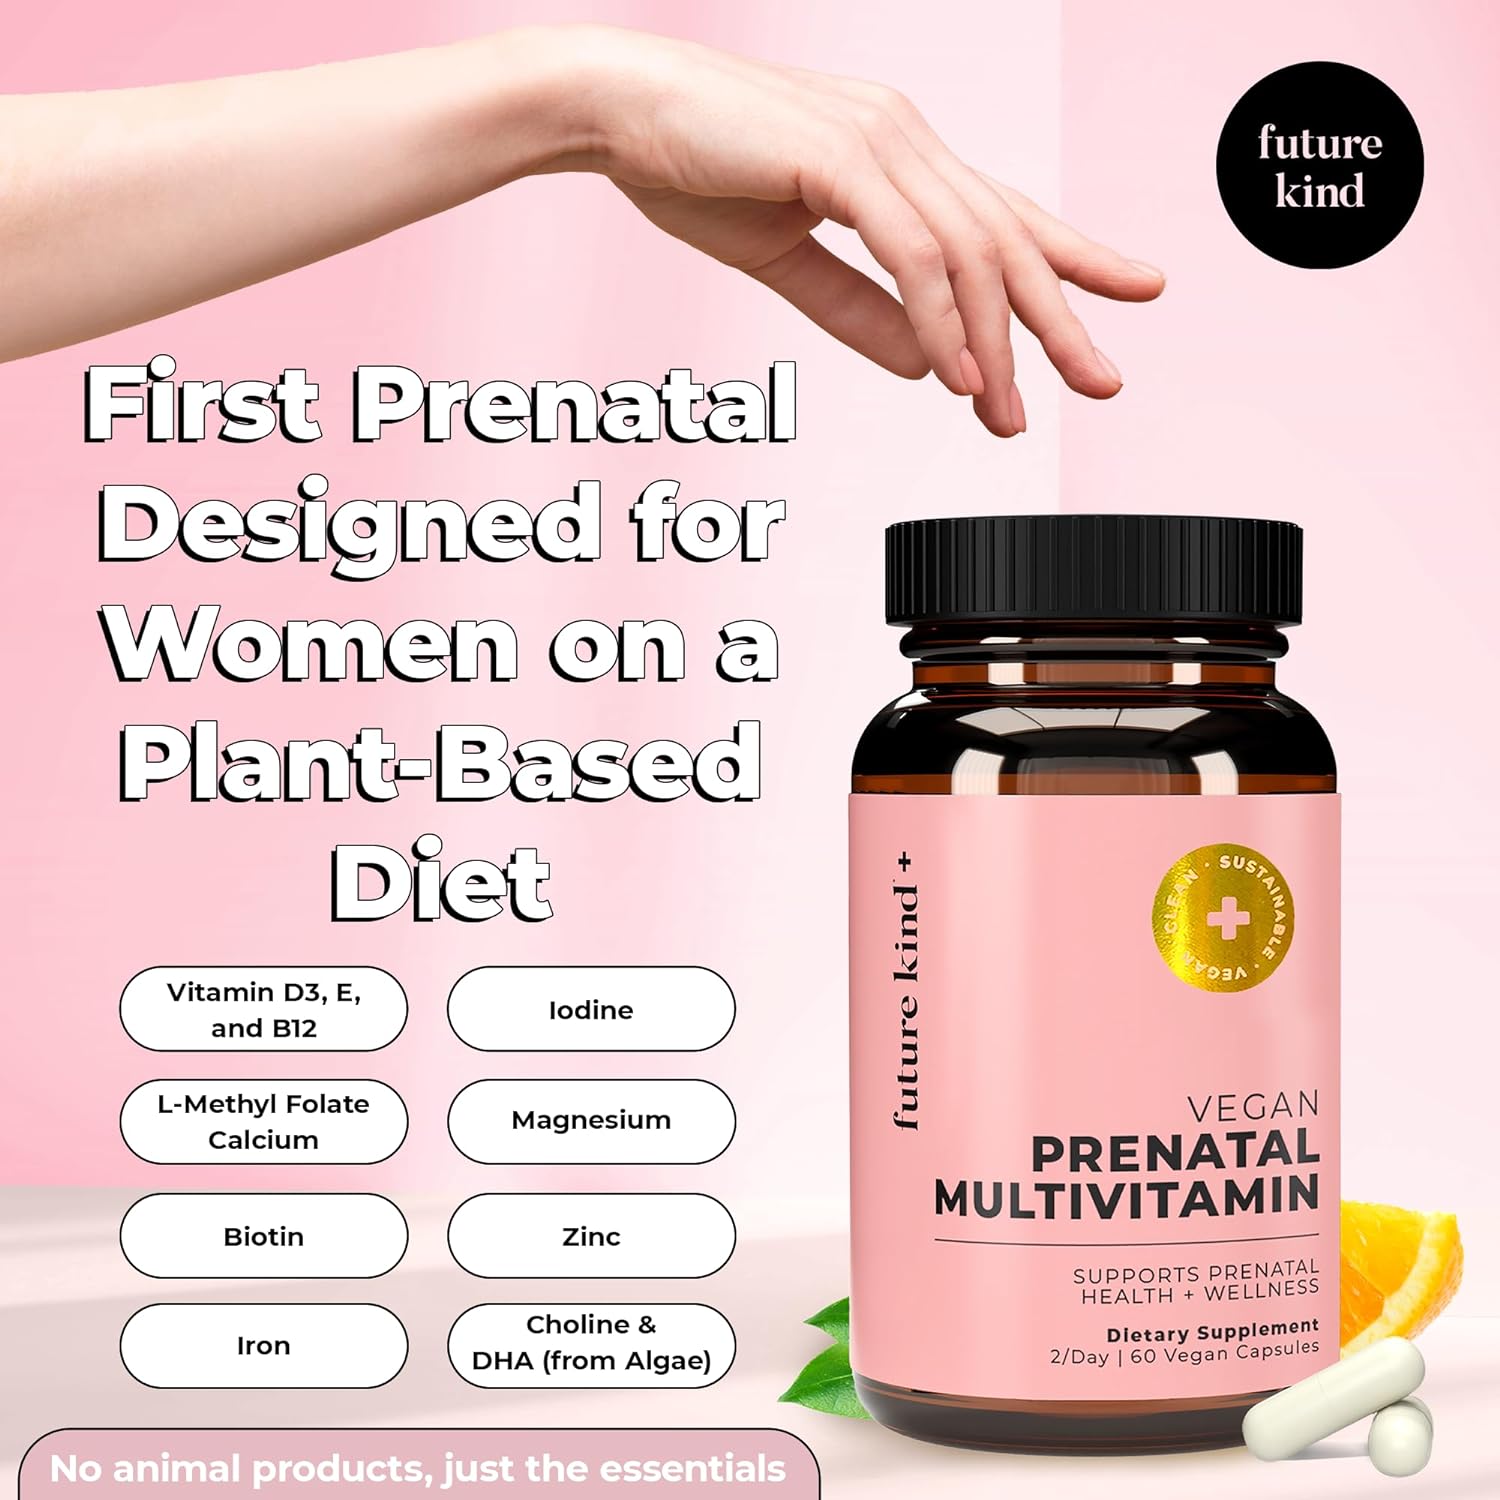 Future Kind Vegan Prenatal Vitamin - (60ct) Prenatal Vitamins with DHA  L-MethylFolate in Glass Bottle - Prenatal Folate Supplement for Women with Vitamin D  E, Iron, Biotin, Gluten-Free  Non-GMO